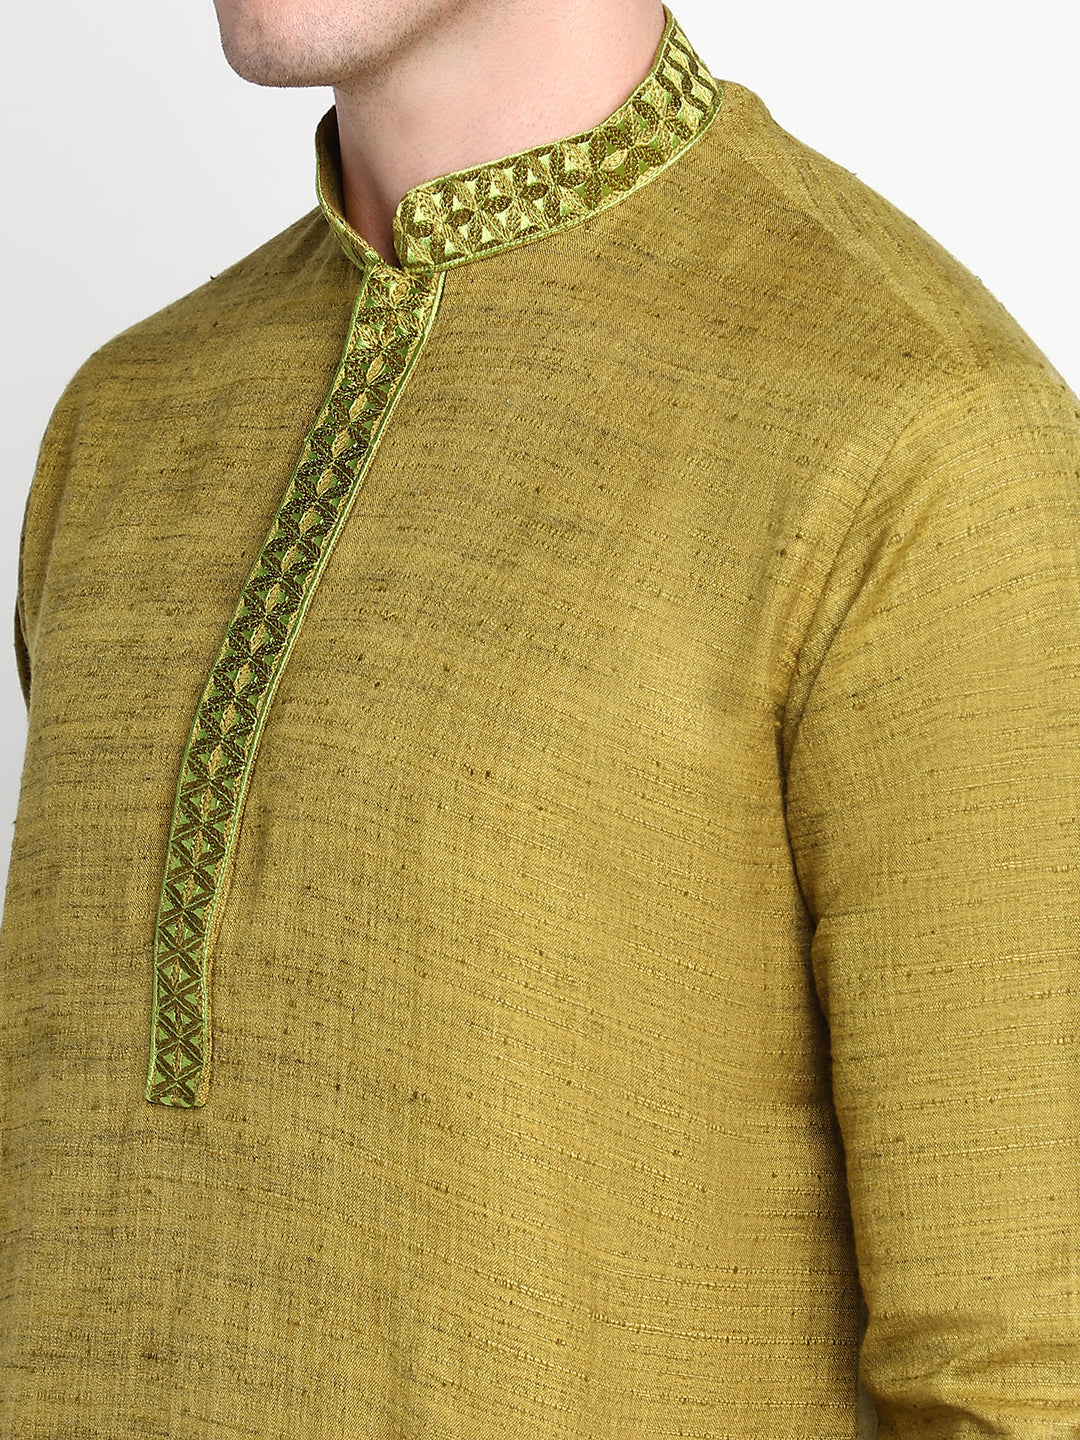 Green Straight Embroidered Cotton Men's Kurta